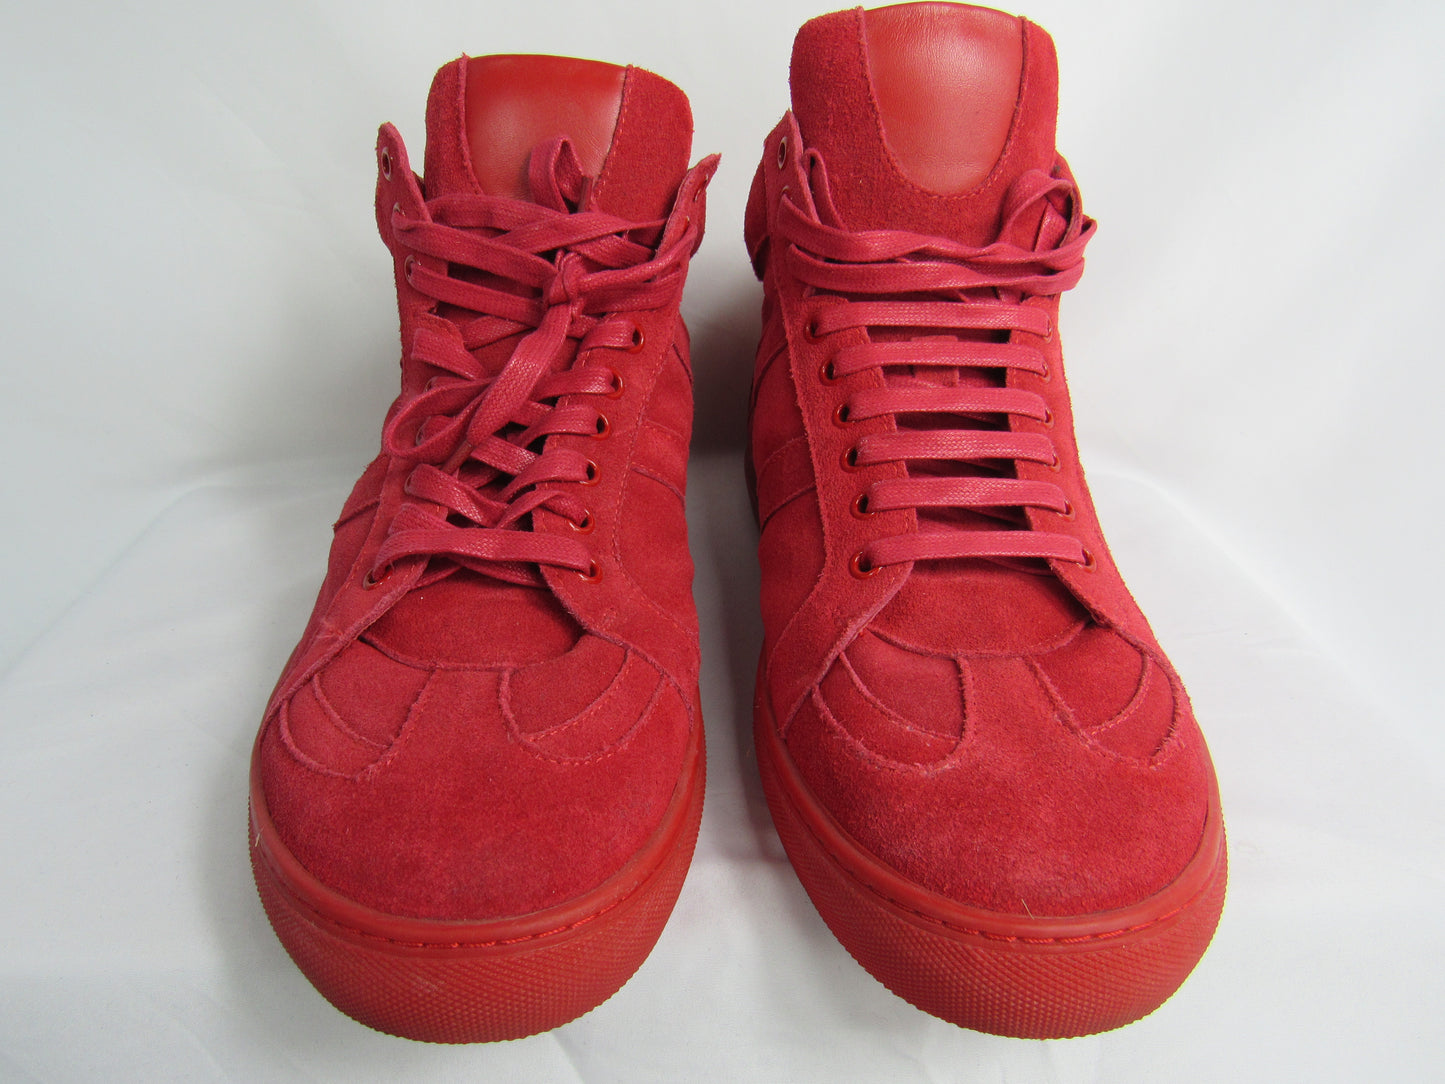 J BERNARD Sneakers - Size 44